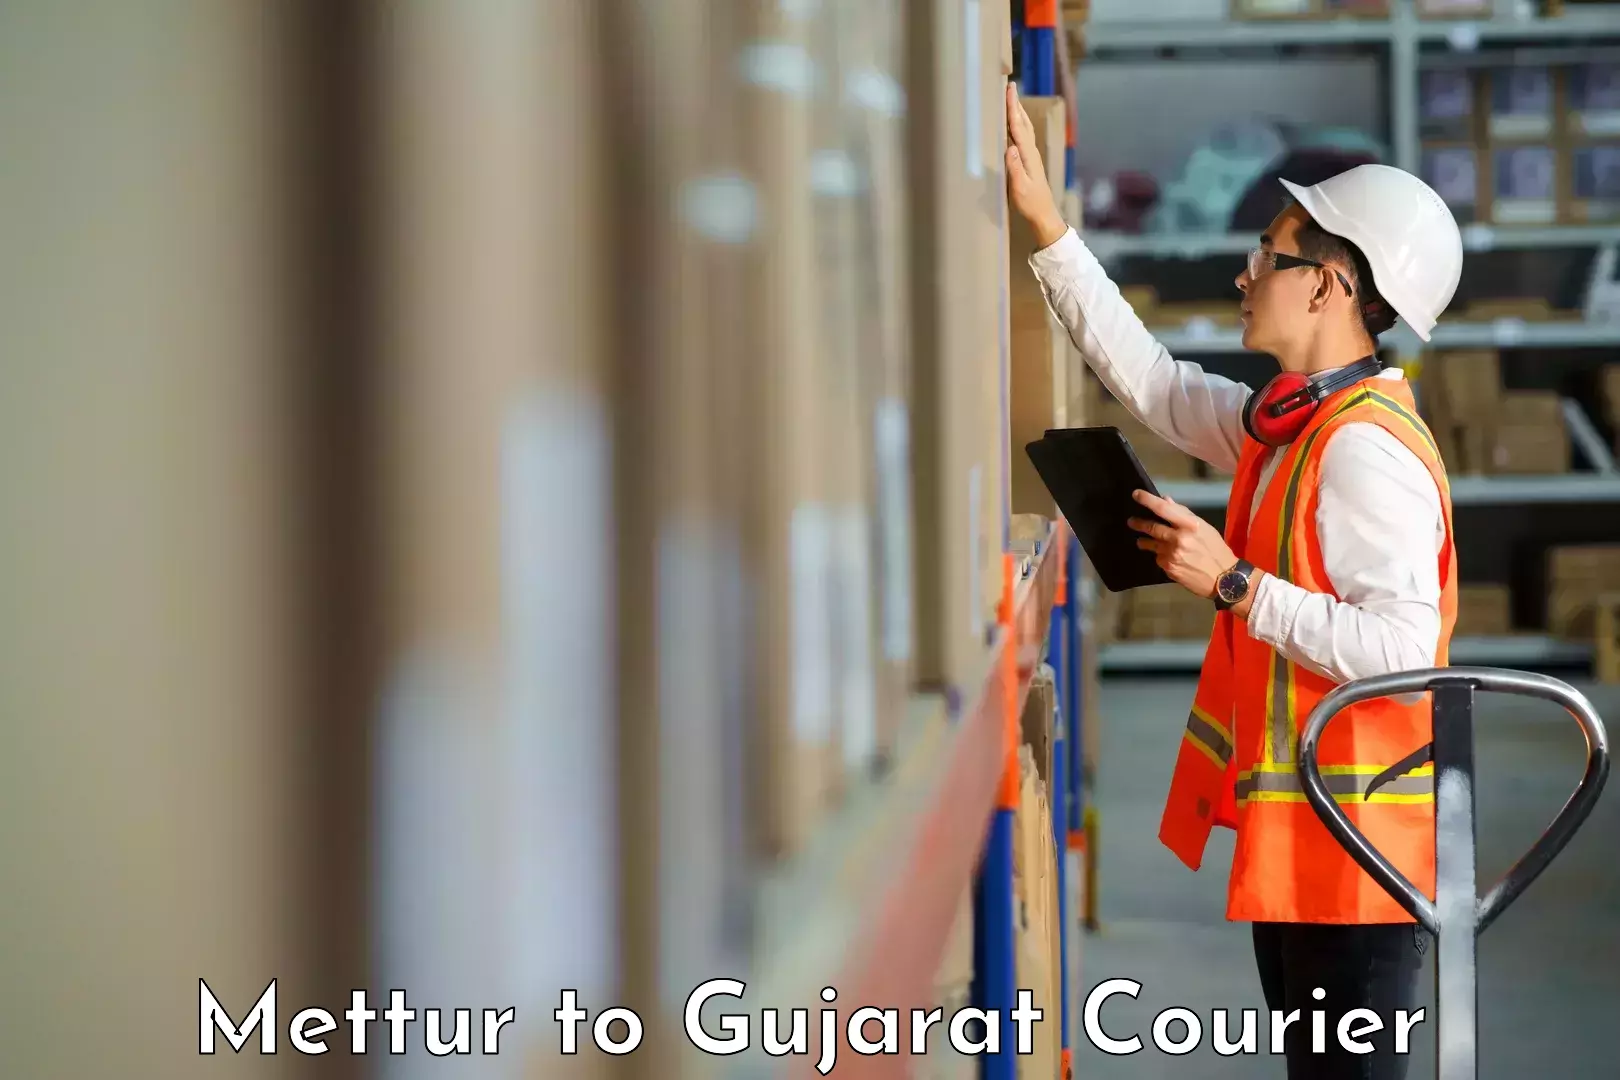 Reliable logistics providers Mettur to Narmada Gujarat